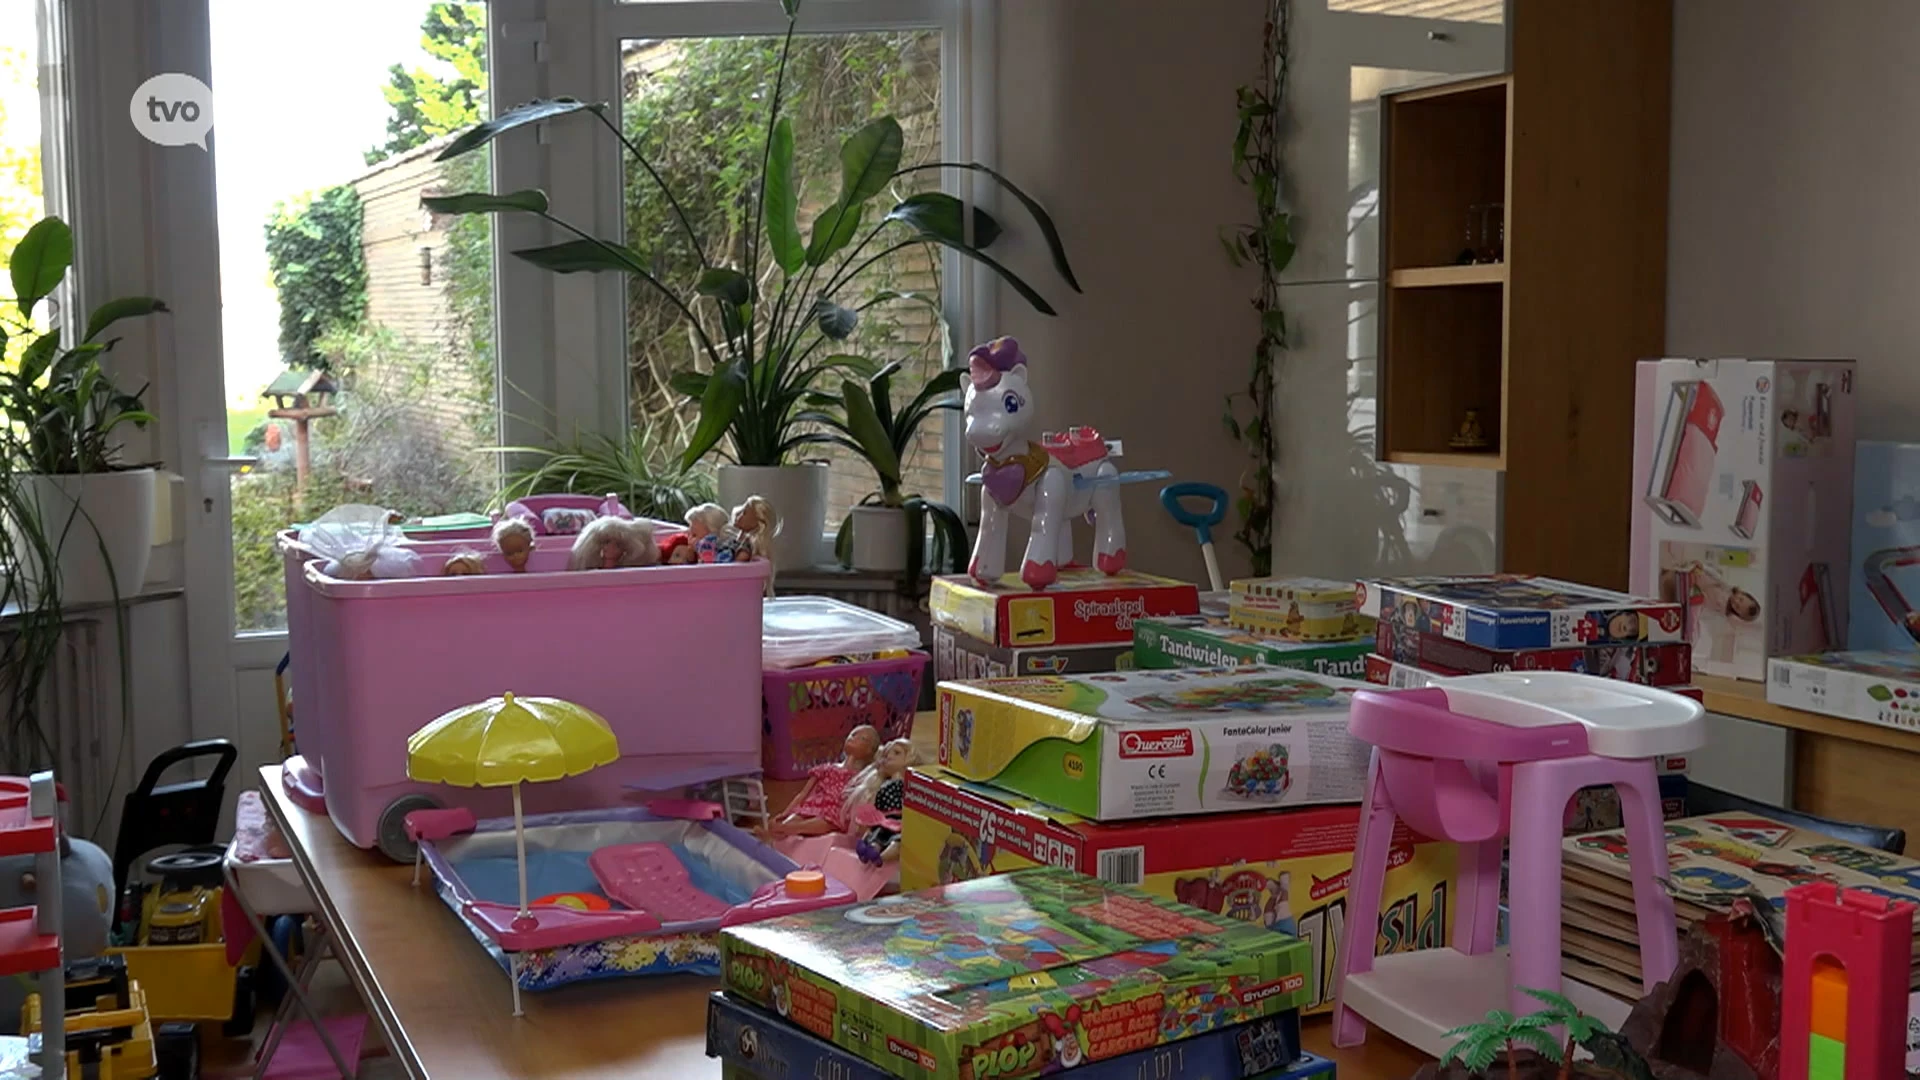 Temsenaars zamelen speelgoed in om kansarme kinderen mooie Sinterklaas te bezorgen